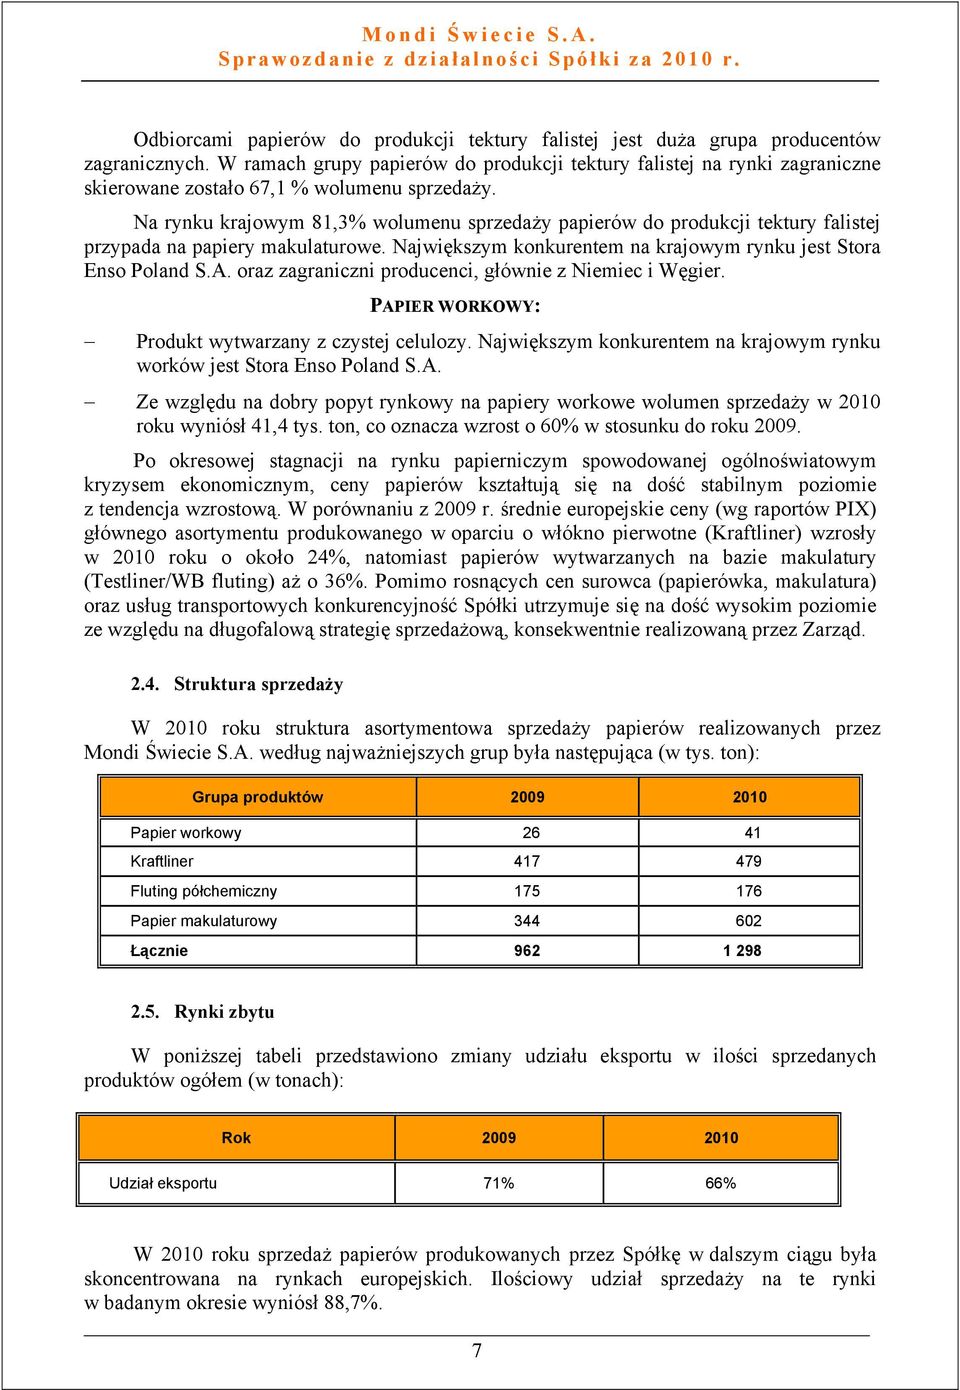 Na rynku krajowym 81,3% wolumenu sprzedaży papierów do produkcji tektury falistej przypada na papiery makulaturowe. Największym konkurentem na krajowym rynku jest Stora Enso Poland S.A.